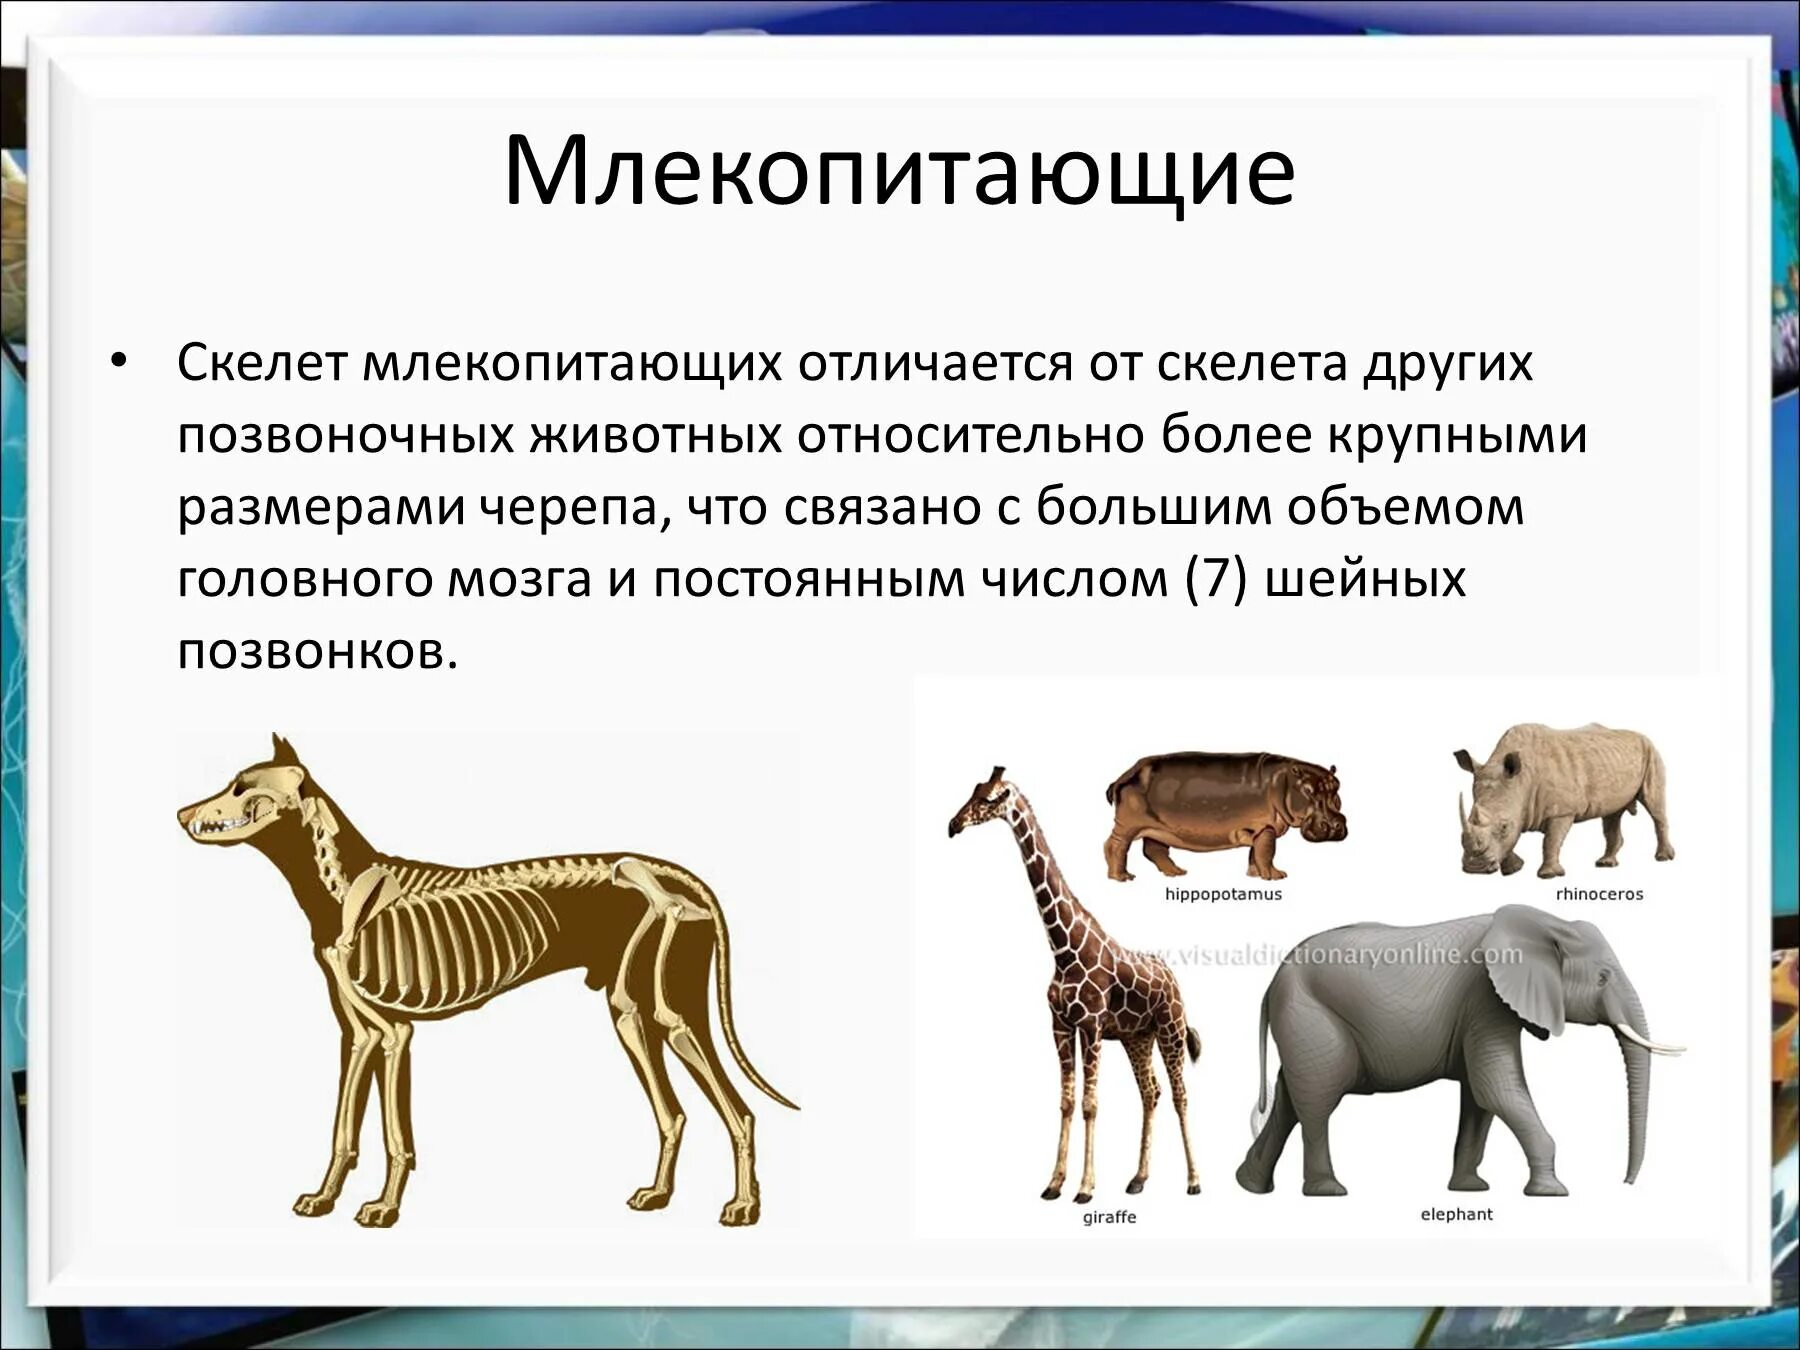 Млекопитающие презентация. Разнообразие млекопитающих. Сообщение о млекопитающих. Многообразие позвоночных животных.